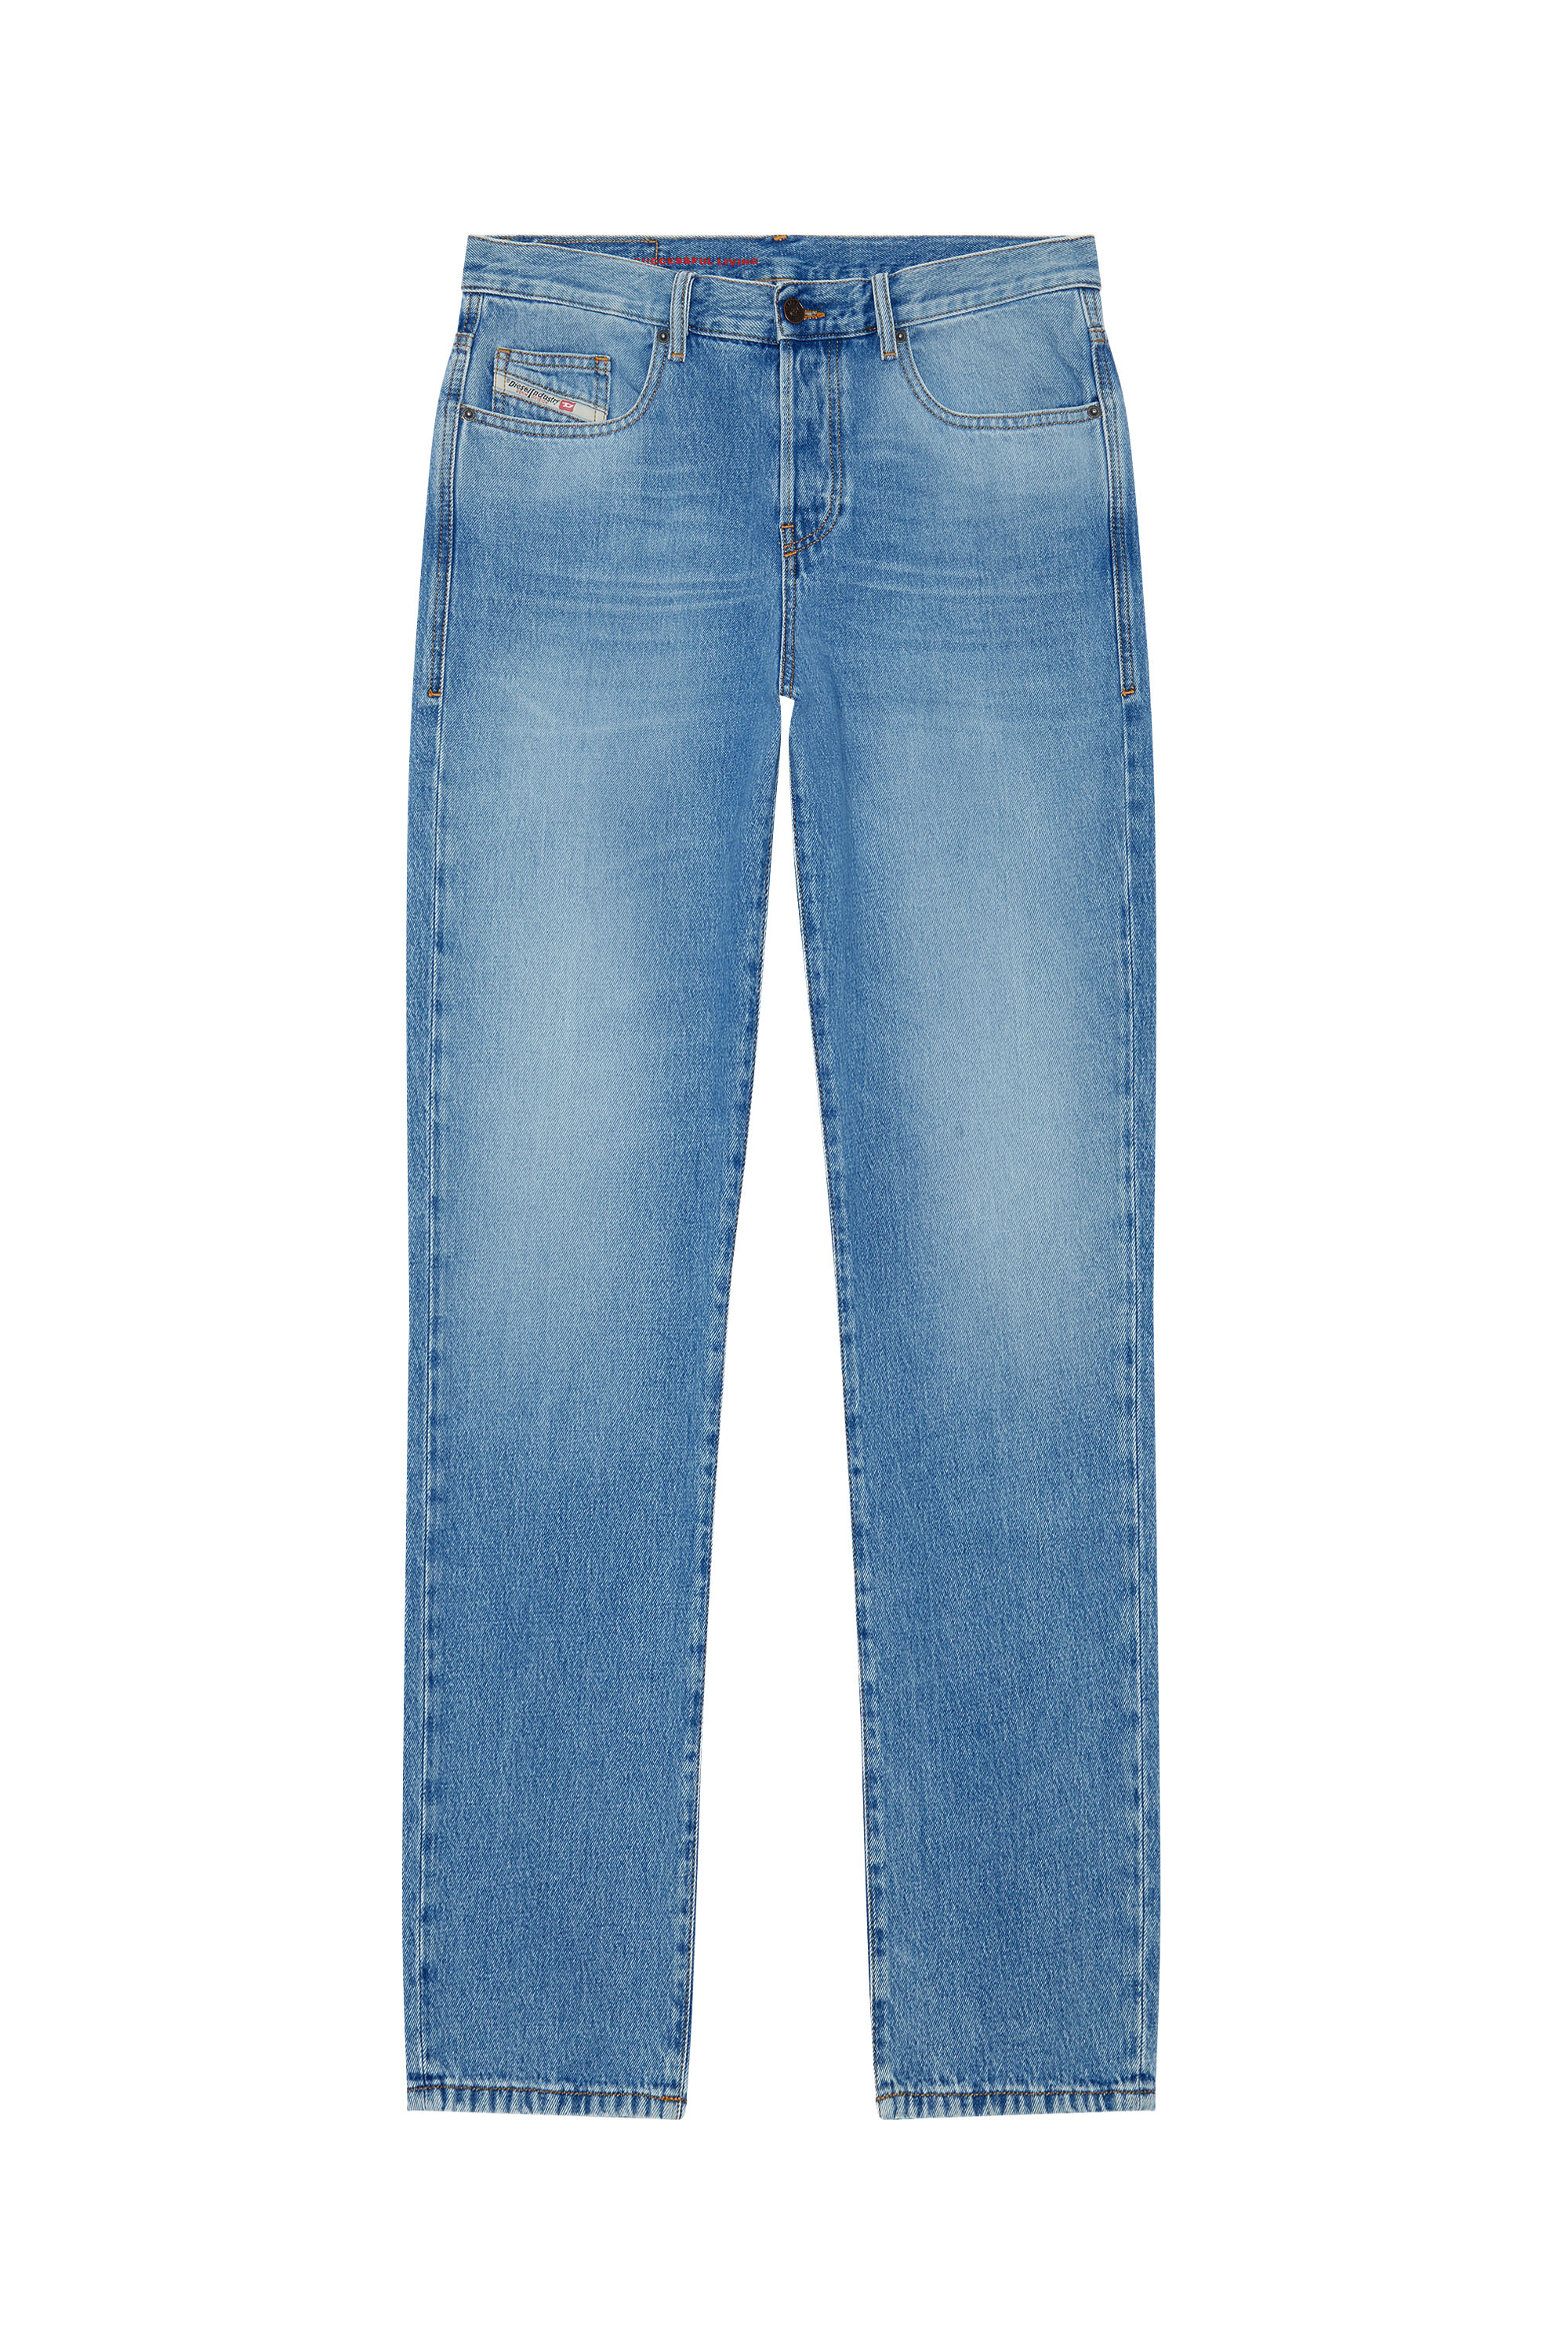 Renovatie Je zal beter worden Niet ingewikkeld Men's Straight Jeans: D-Macs, Larkee, Safado | Diesel